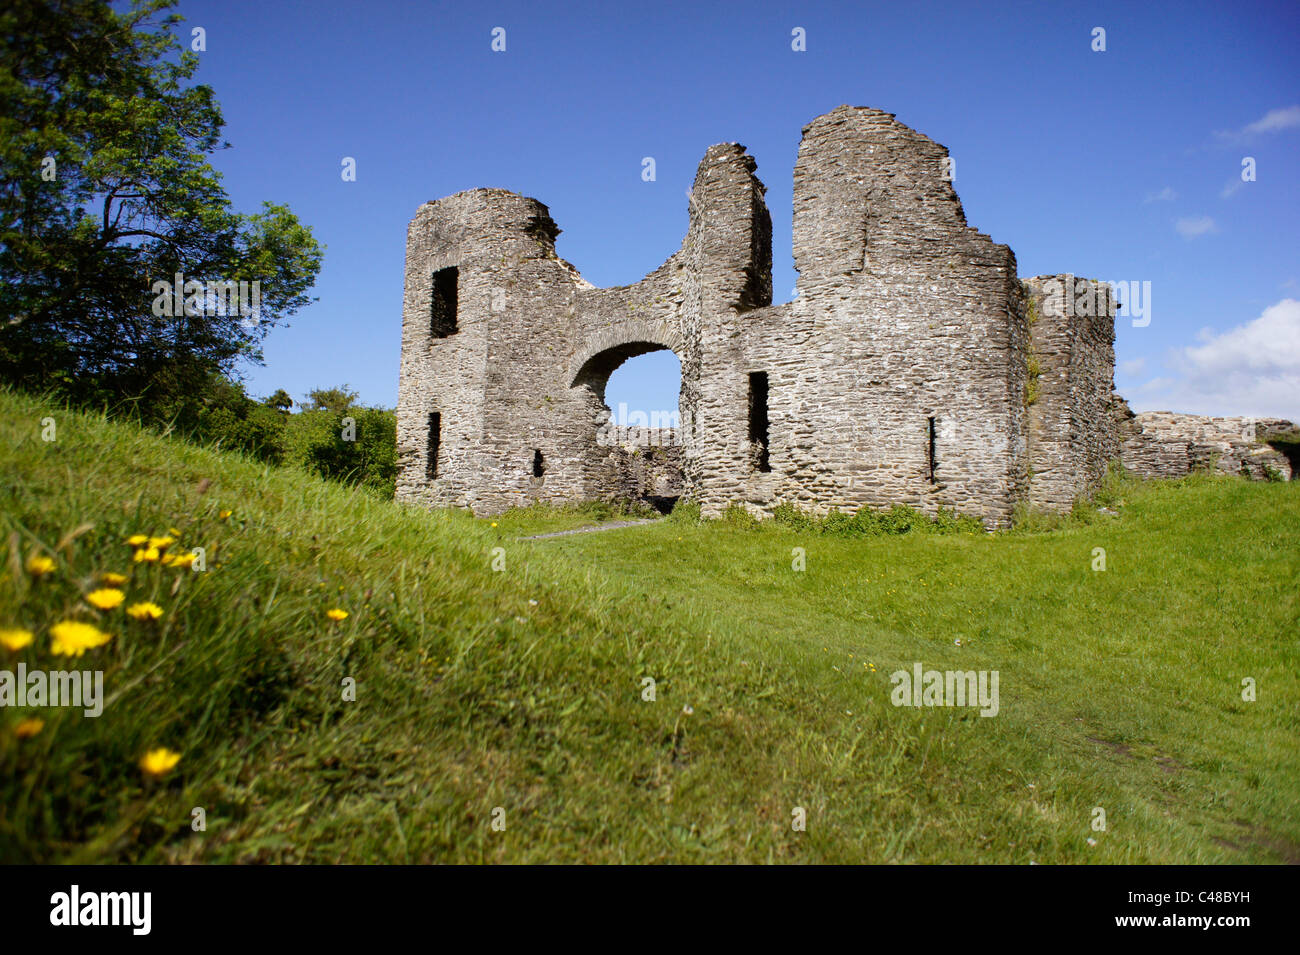 Ingresso al castello a Newcastle Emlyn, Carmarthenshire, Galles Galles Wales. È stata sequestrata nel 1215 da Llewelyn il Grande (Llywelyn ap Iorwerth) Foto Stock